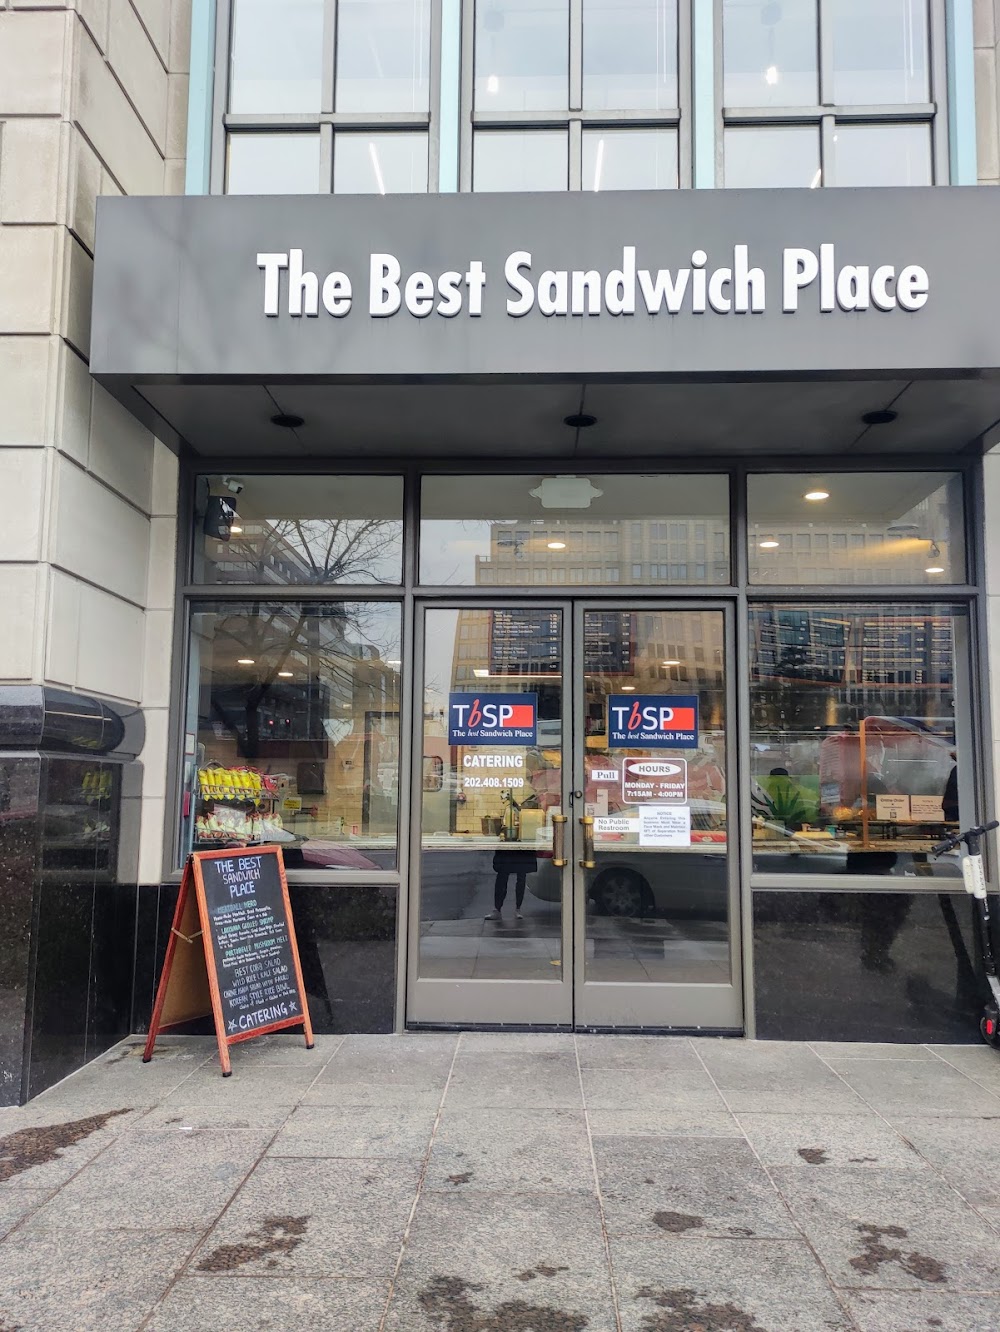 The Best Sandwich Place